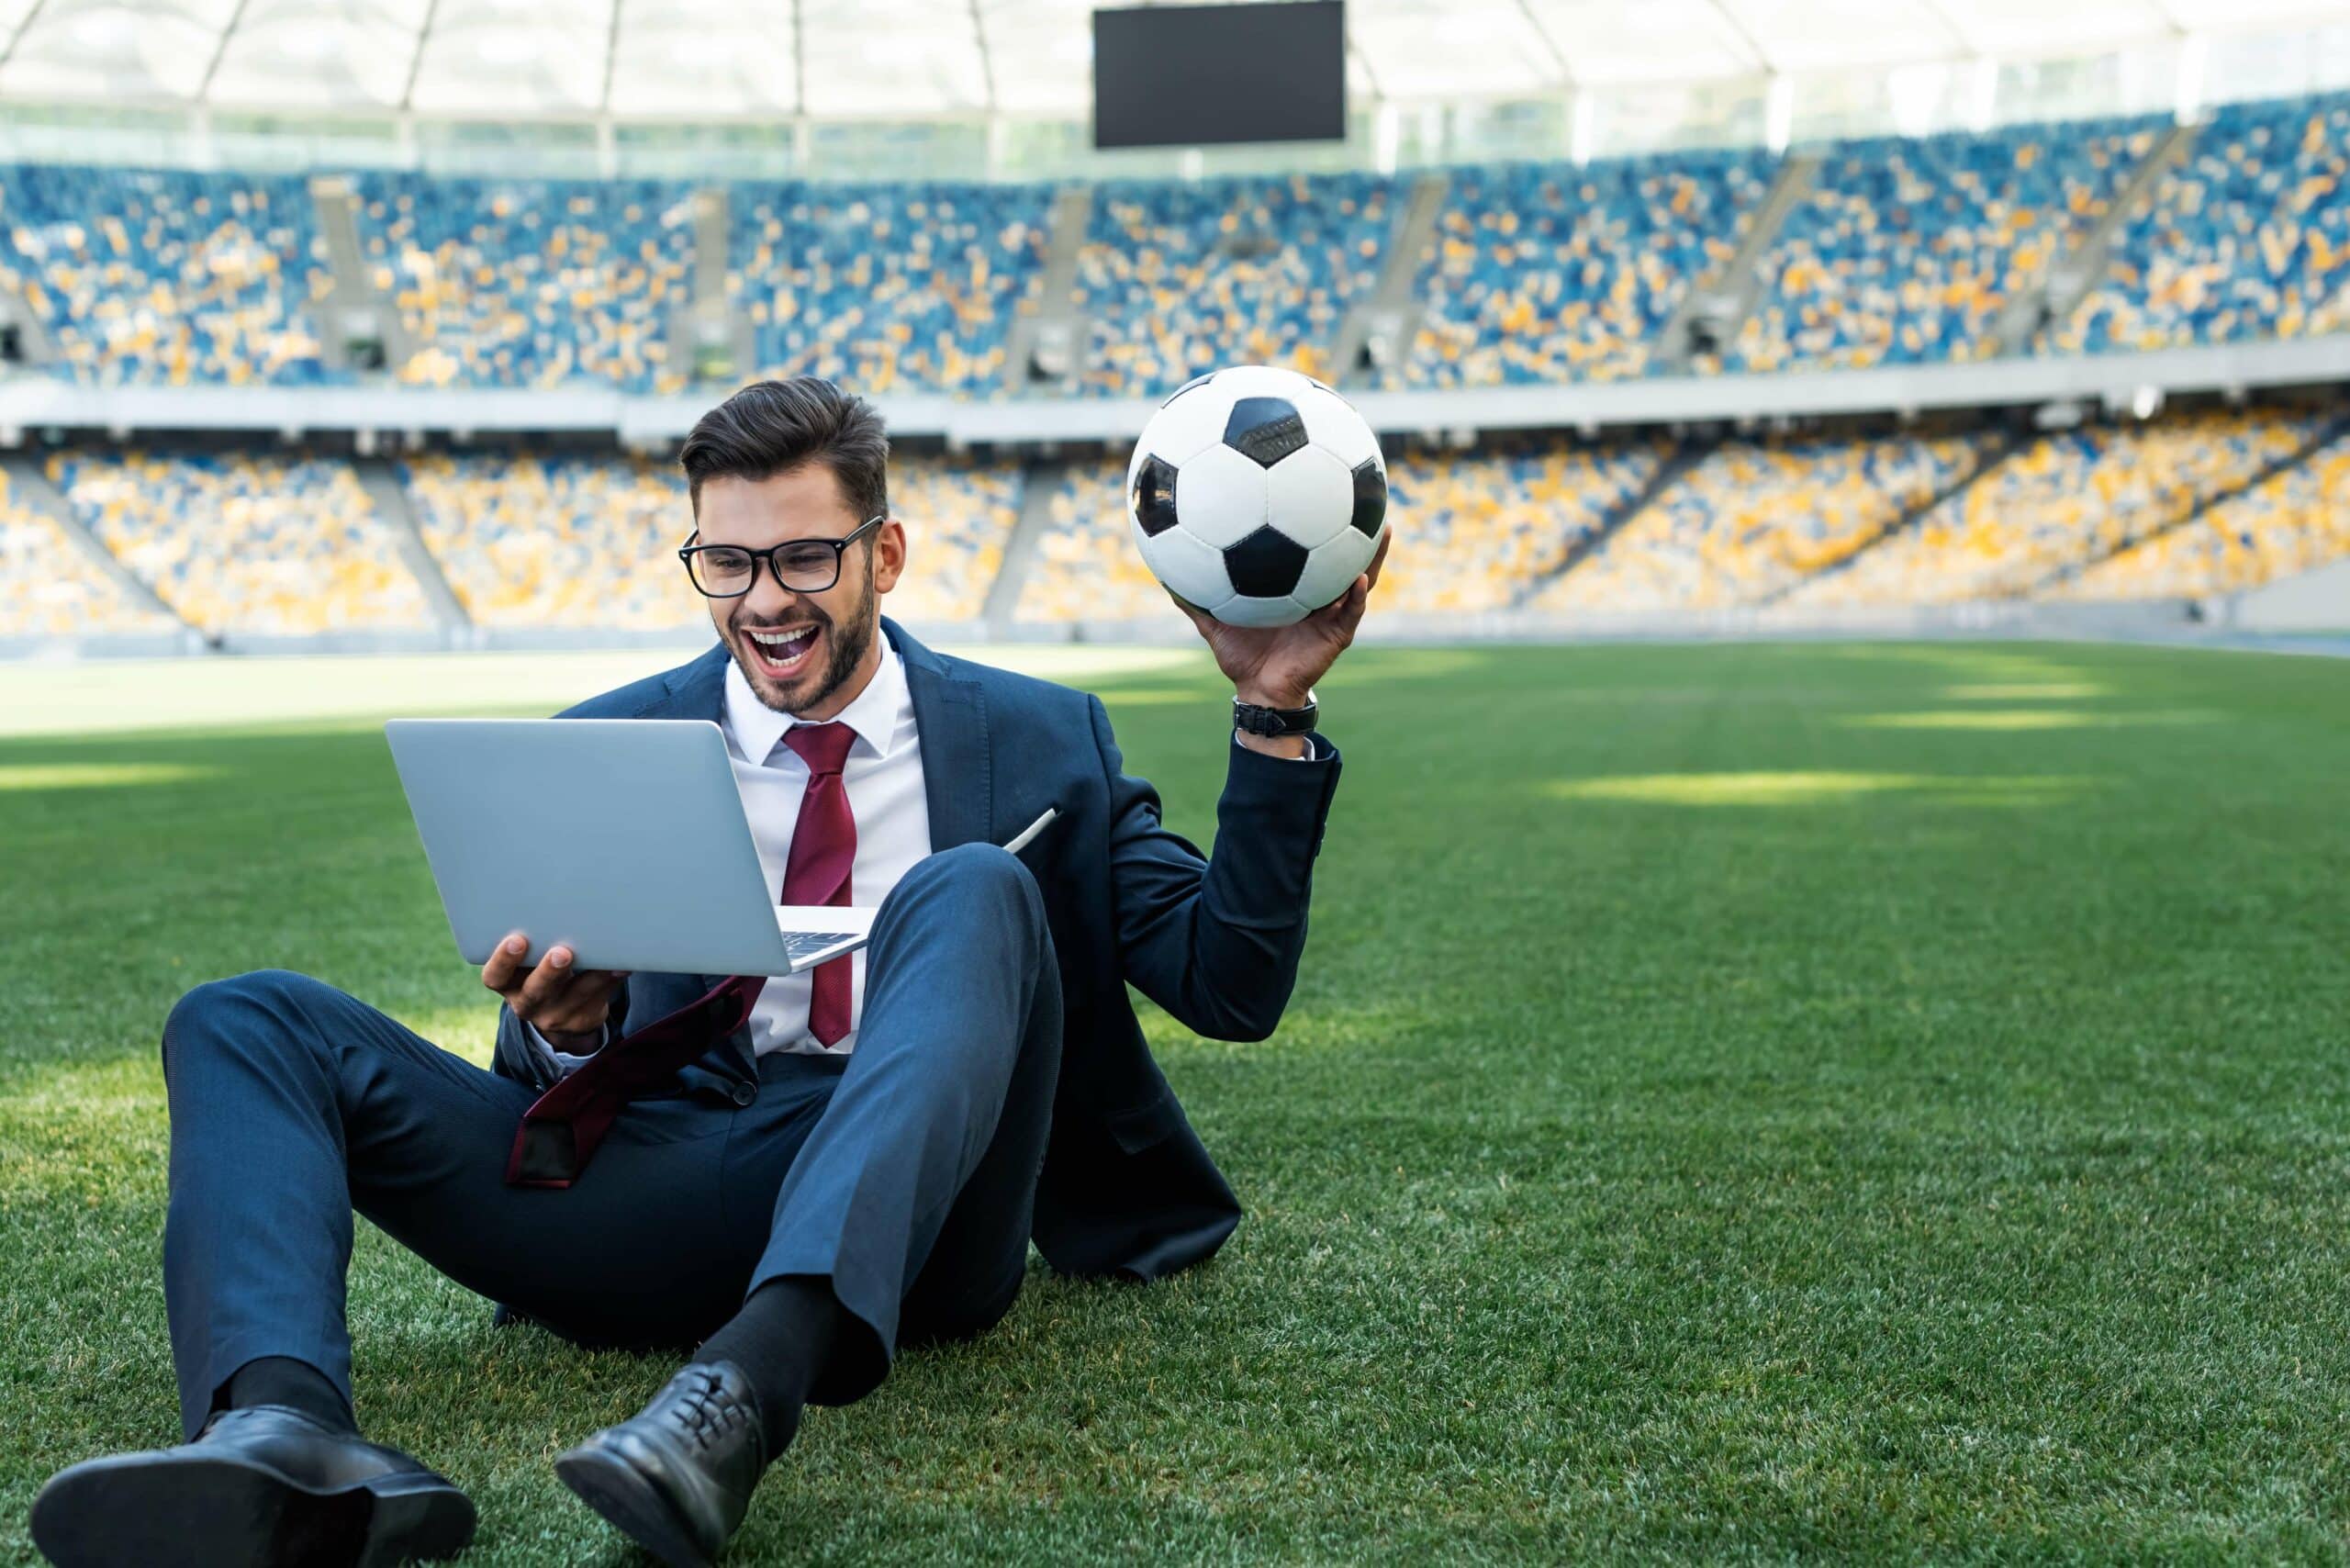 Arbitrázs jelentése a sportfogadásban - illusztráció a cikkhez. Egy öltönyös fiatalember laptoppal és focilabdával a kezében ül a stadion közepén és örvendezik, feltehetően a sportfogadási nyereménye láttán.